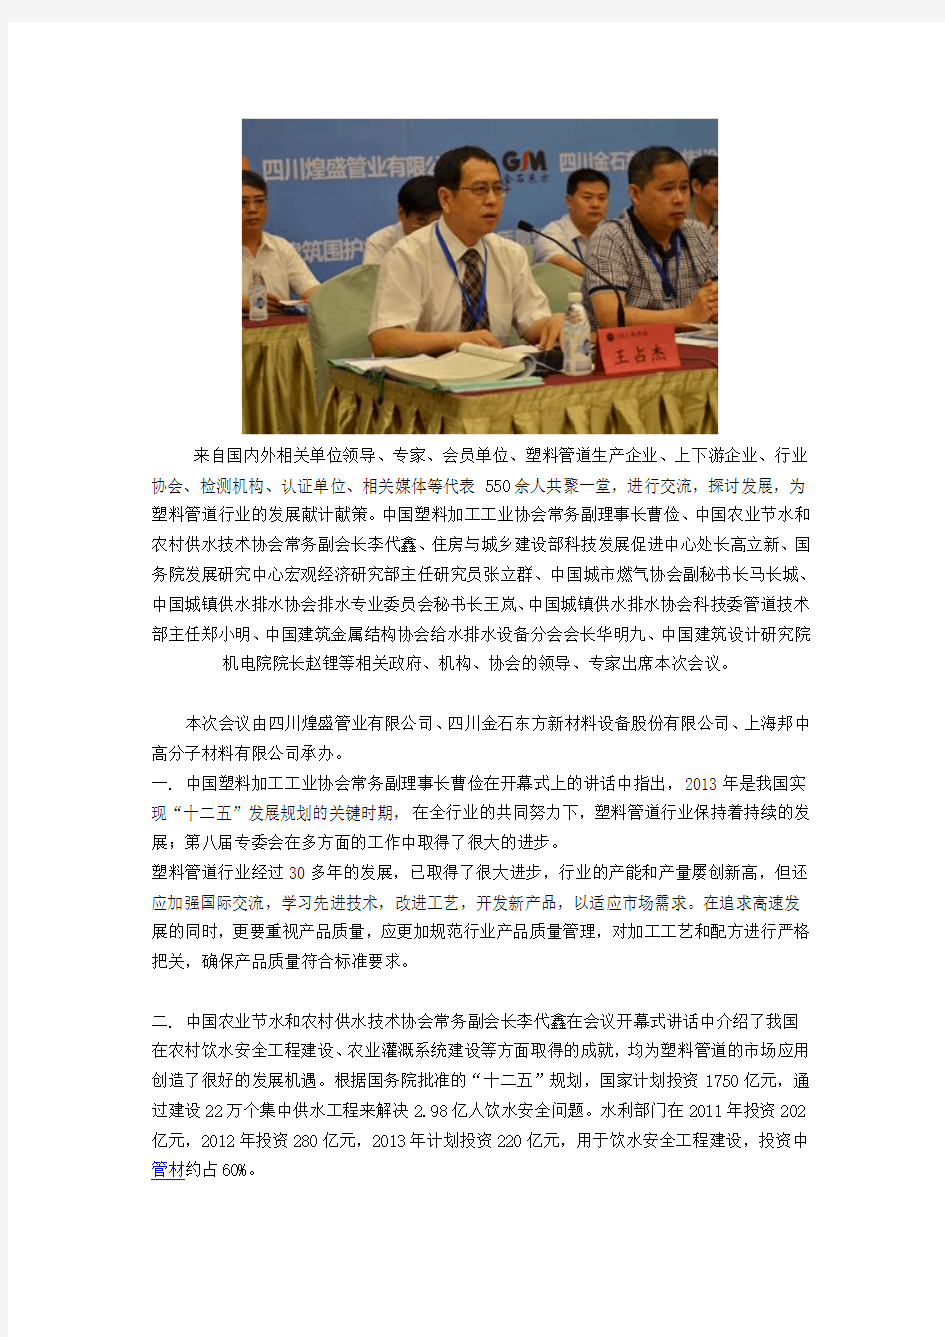 2013年中国管道会议